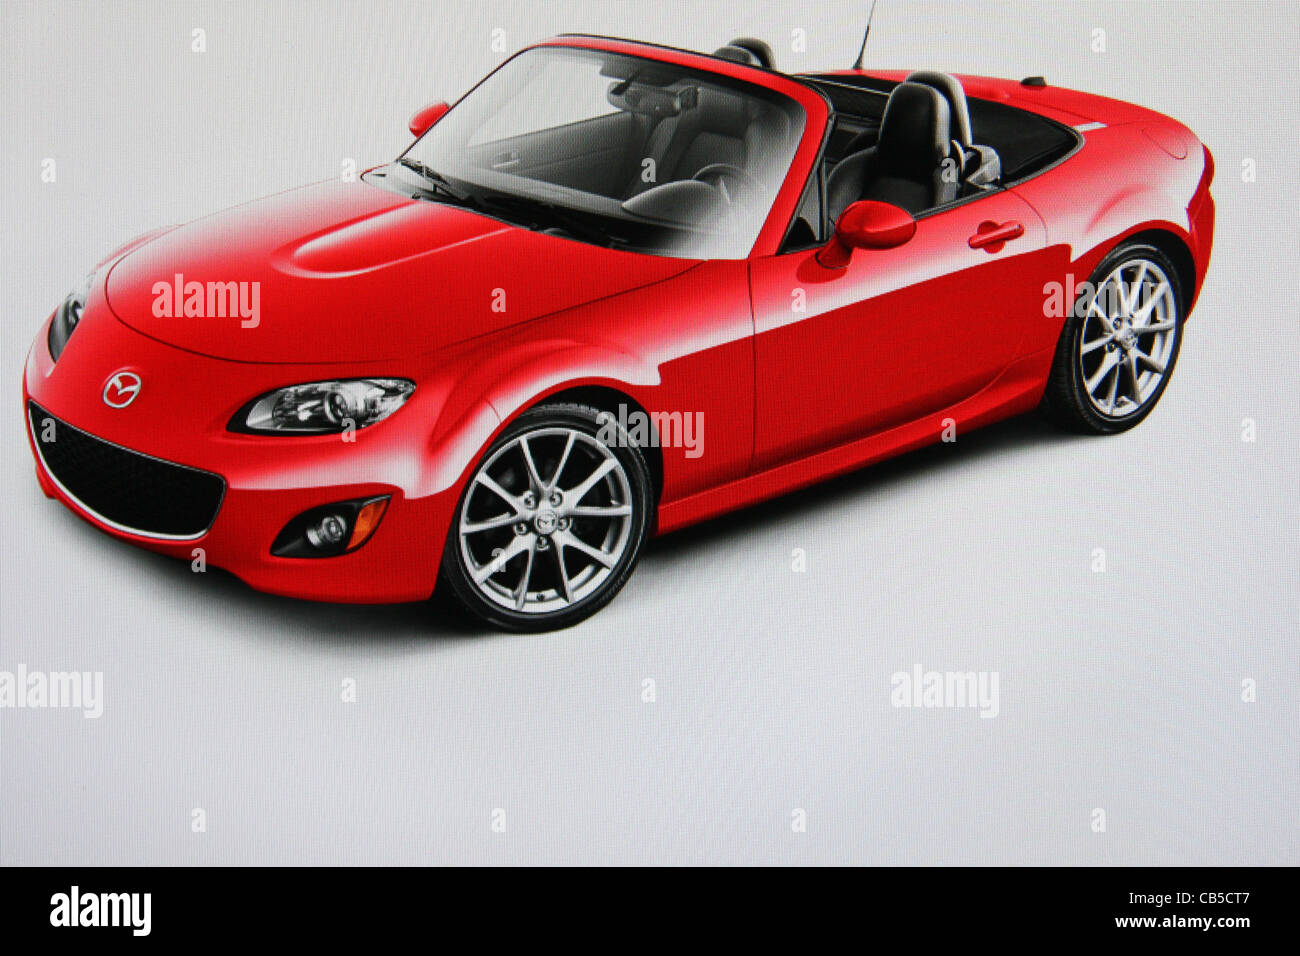 red mazda miata convertible sports car Stock Photo